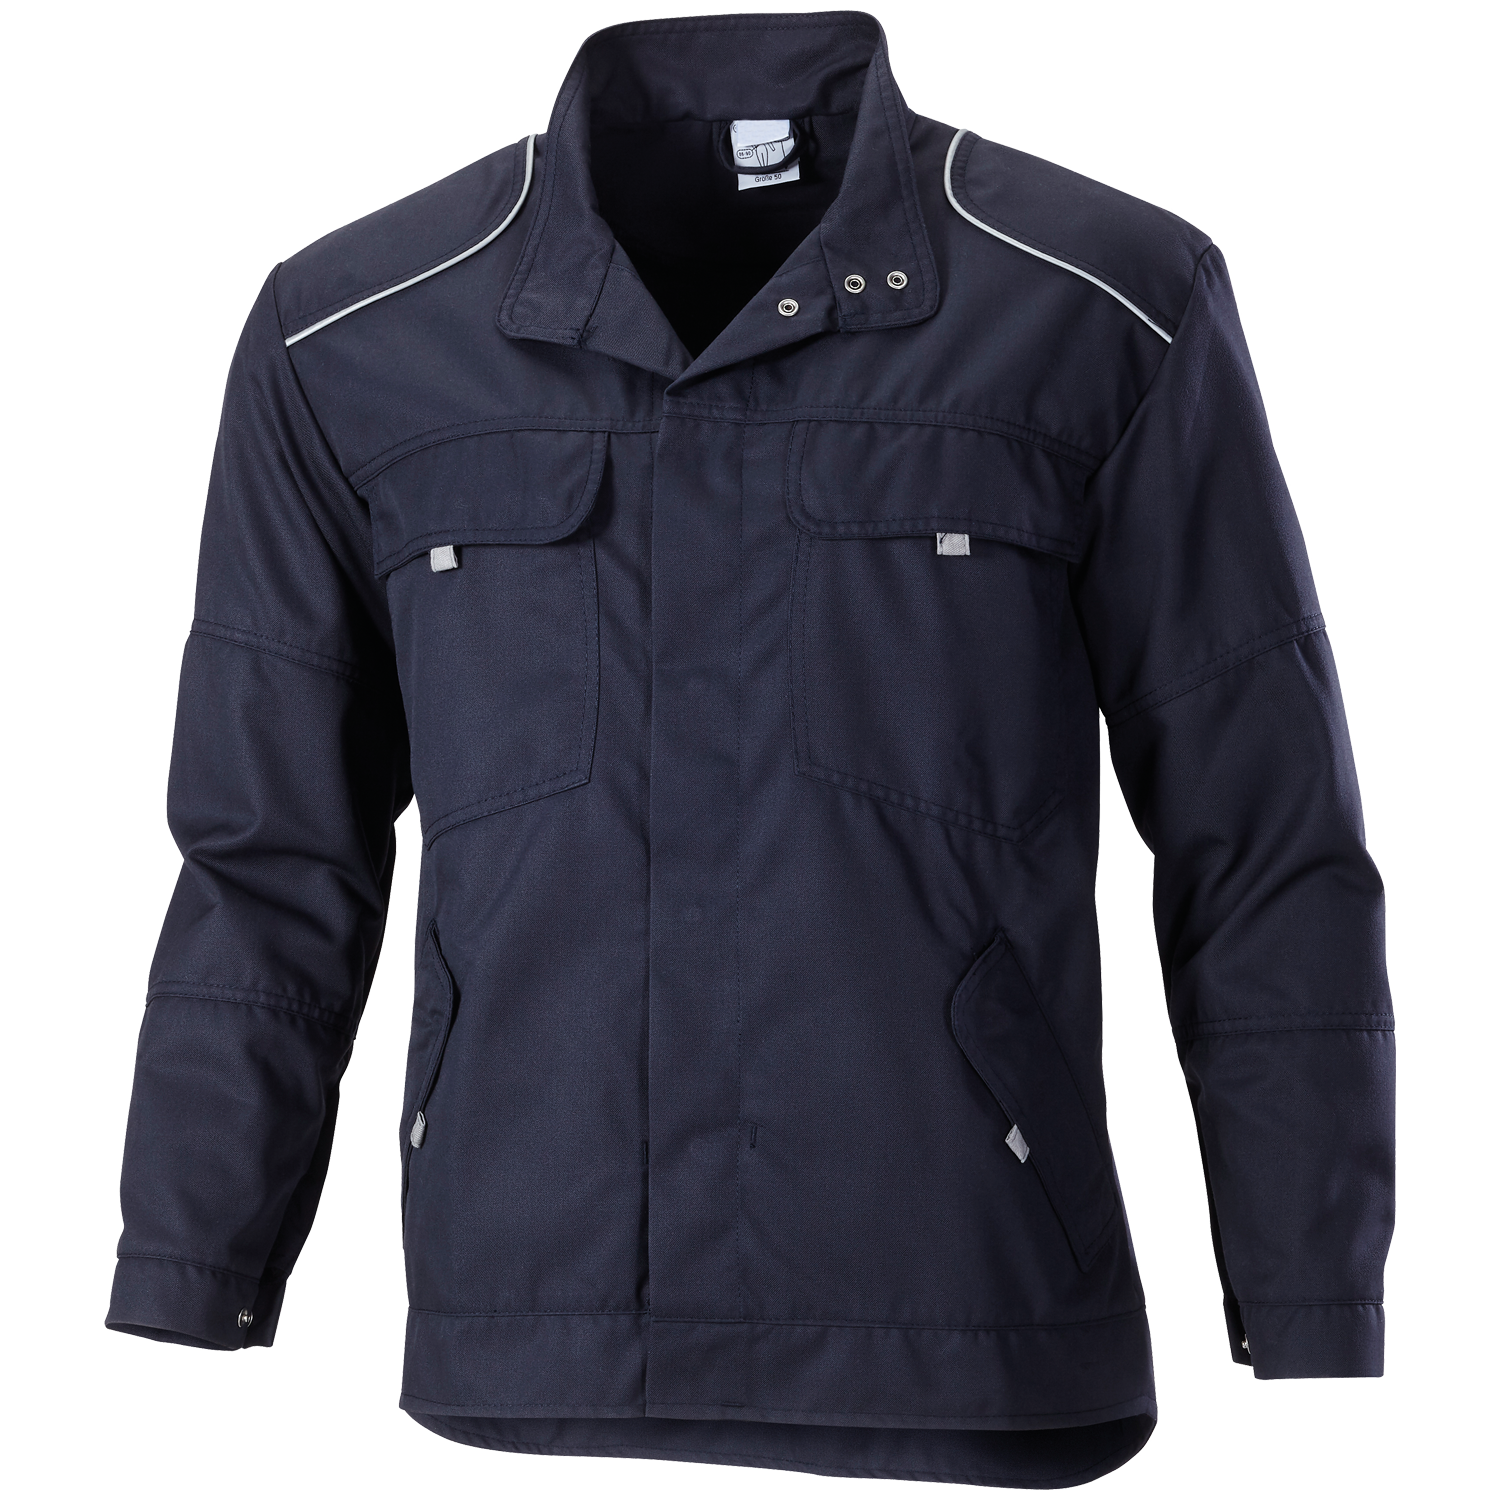 CWS Nomex Comfort: Work jacket